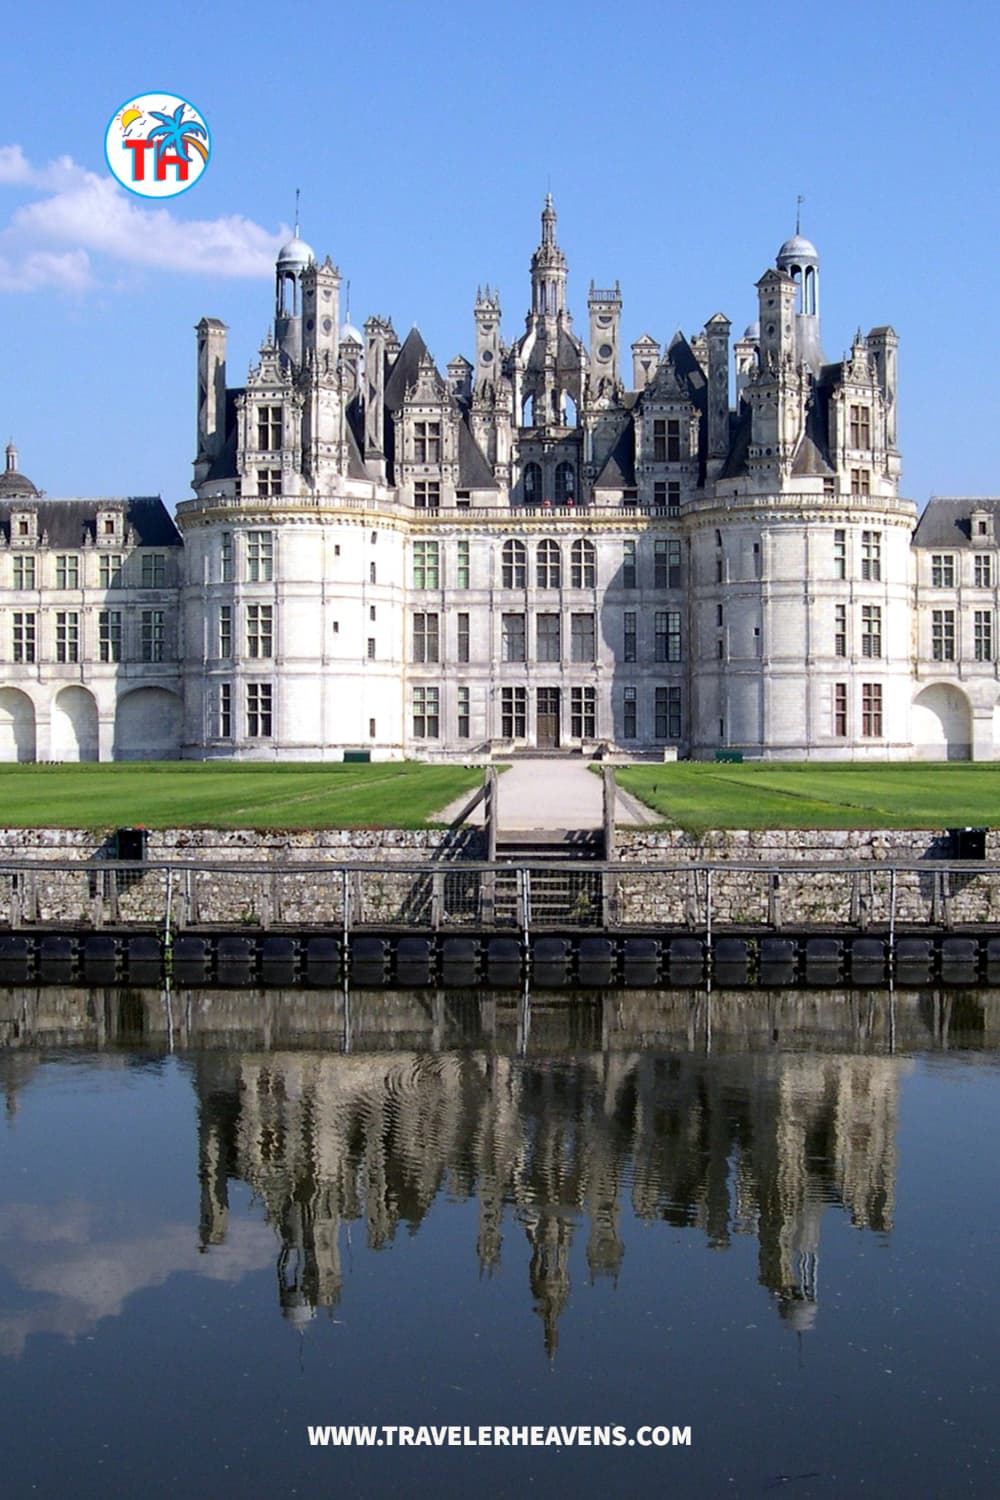 Beautiful Destinations, Best Places to Visit in Pays de la Loire, France, France Travel Guide, Travel to Pays de la Loire, Visit Pays de la Loire